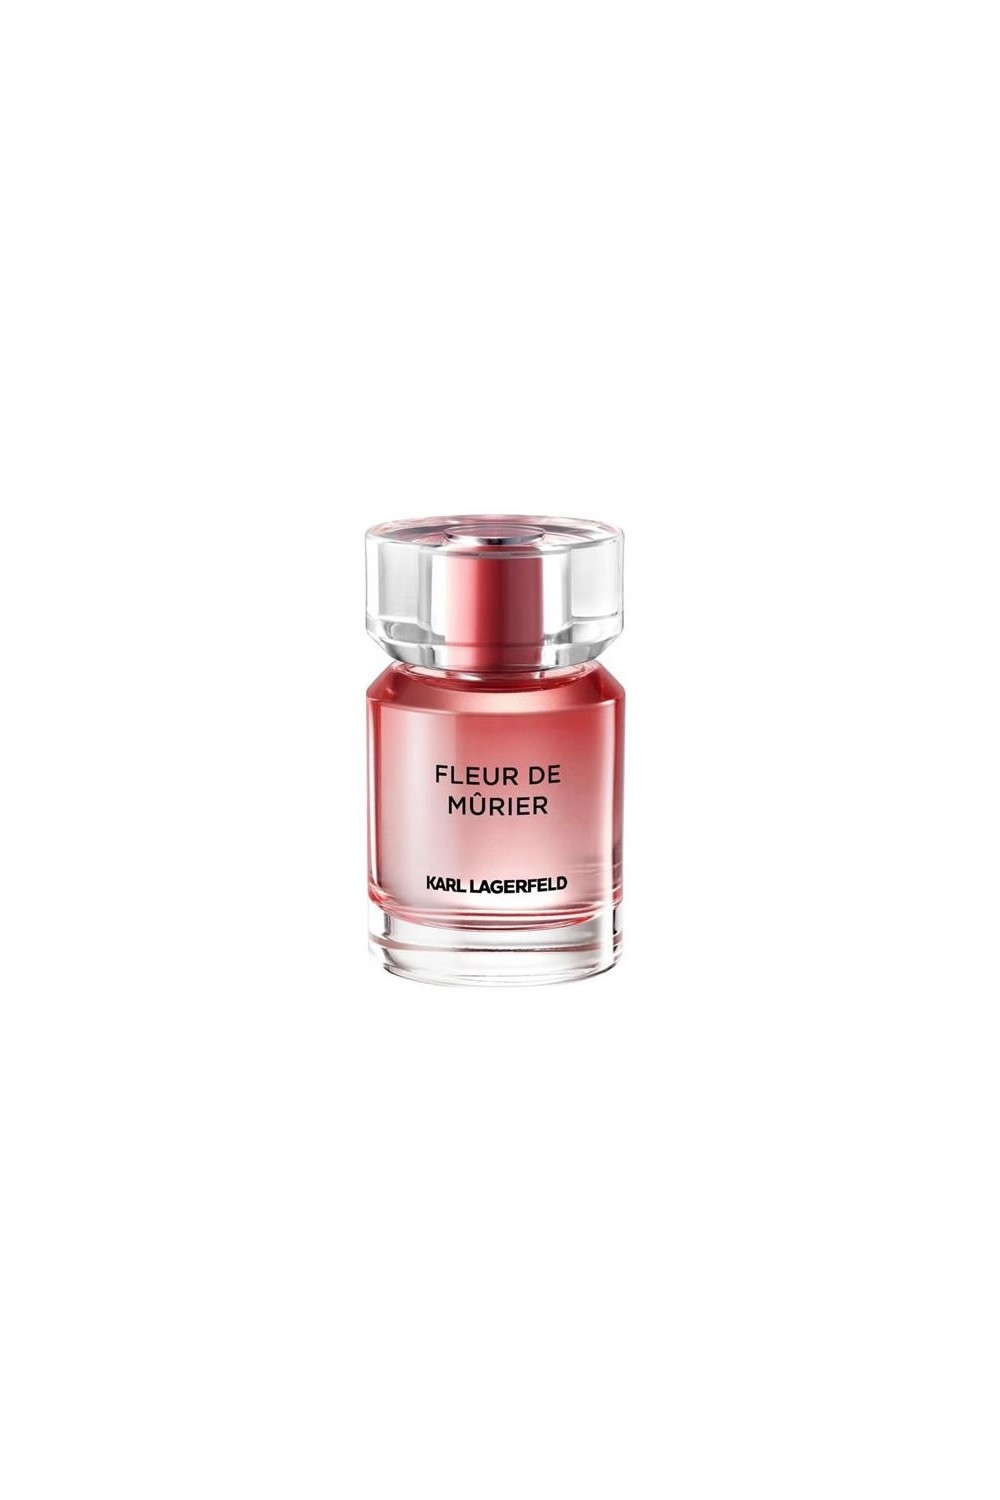 Karl Lagerfeld Fleur De Murier Eau De Perfume Spray 50ml